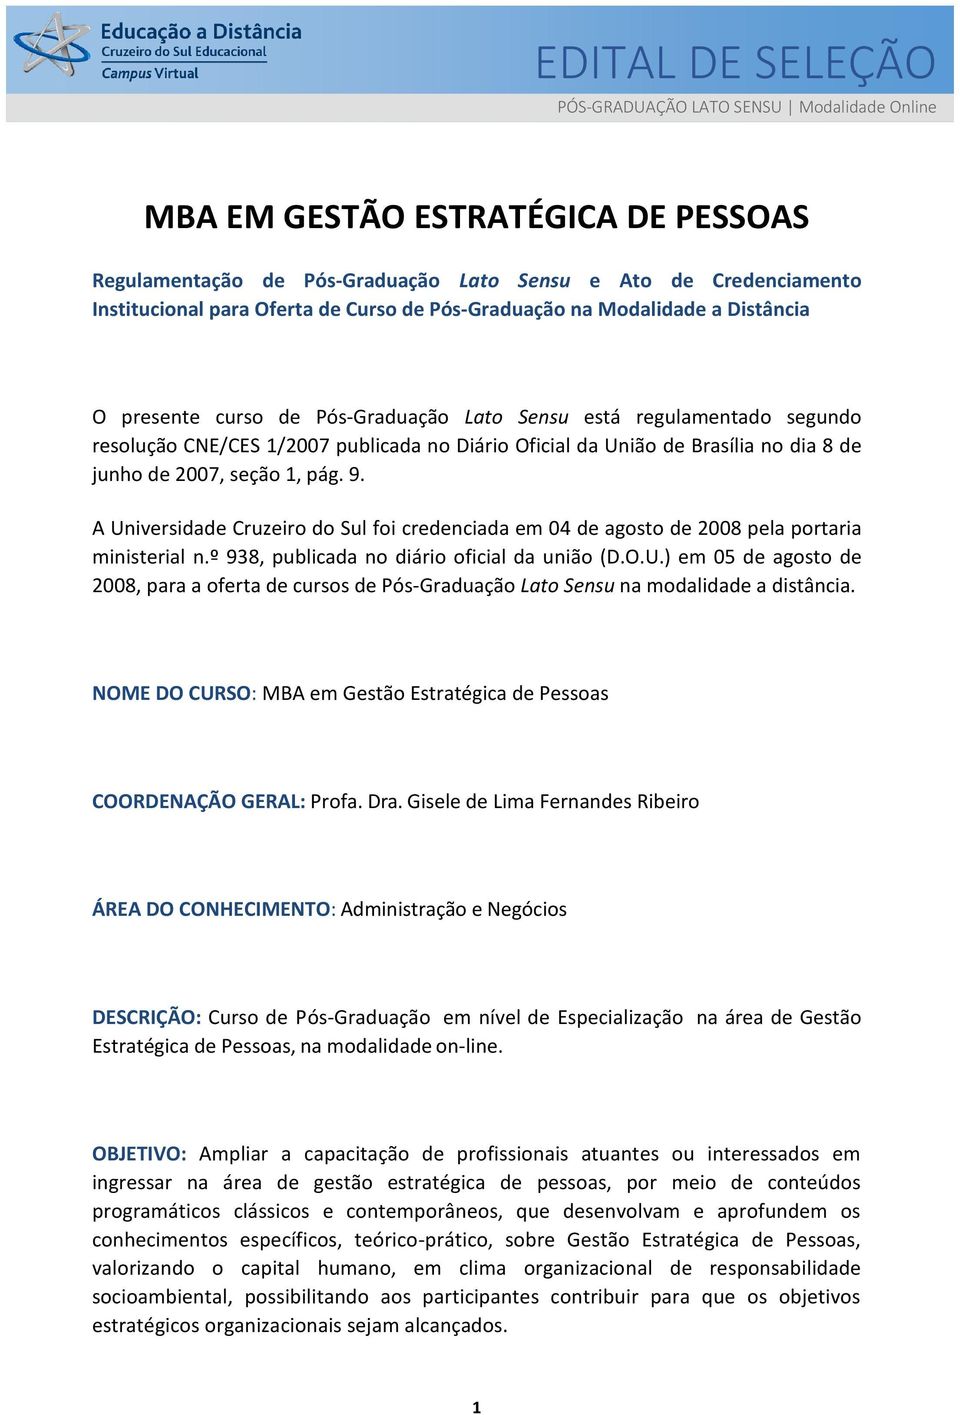 de junho de 2007, seção 1, pág. 9. A Universidade Cruzeiro do Sul foi credenciada em 04 de agosto de 2008 pela portaria ministerial n.º 938, publicada no diário oficial da união (D.O.U.) em 05 de agosto de 2008, para a oferta de cursos de Pós-Graduação Lato Sensu na modalidade a distância.